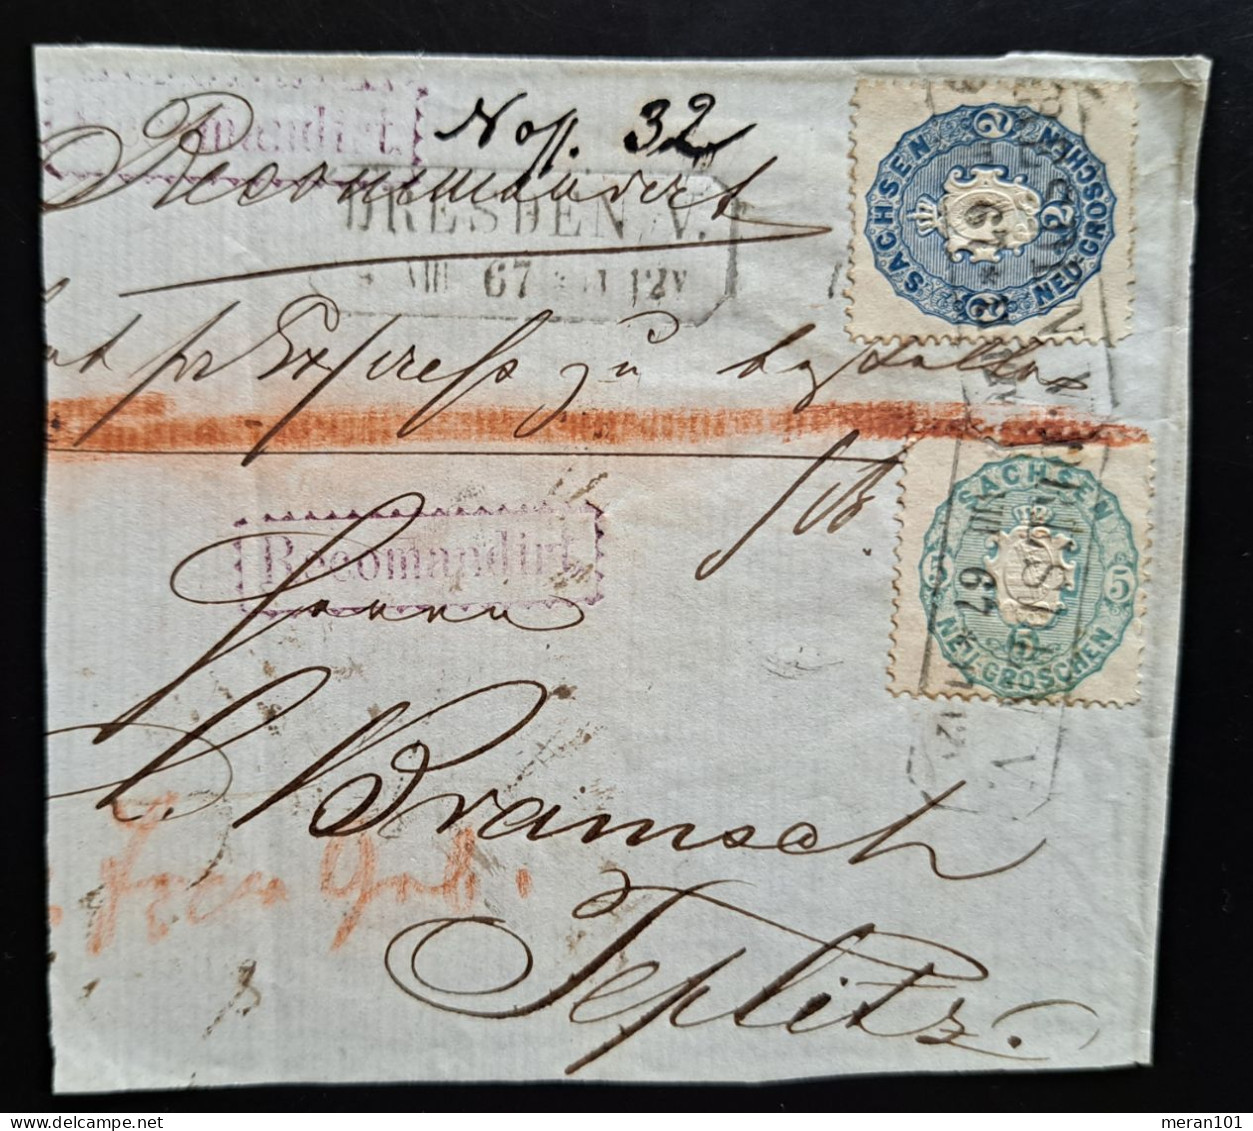 Sachsen 1867, Reko-Briefstück DRESDEN Mi 17+19 - Saxony